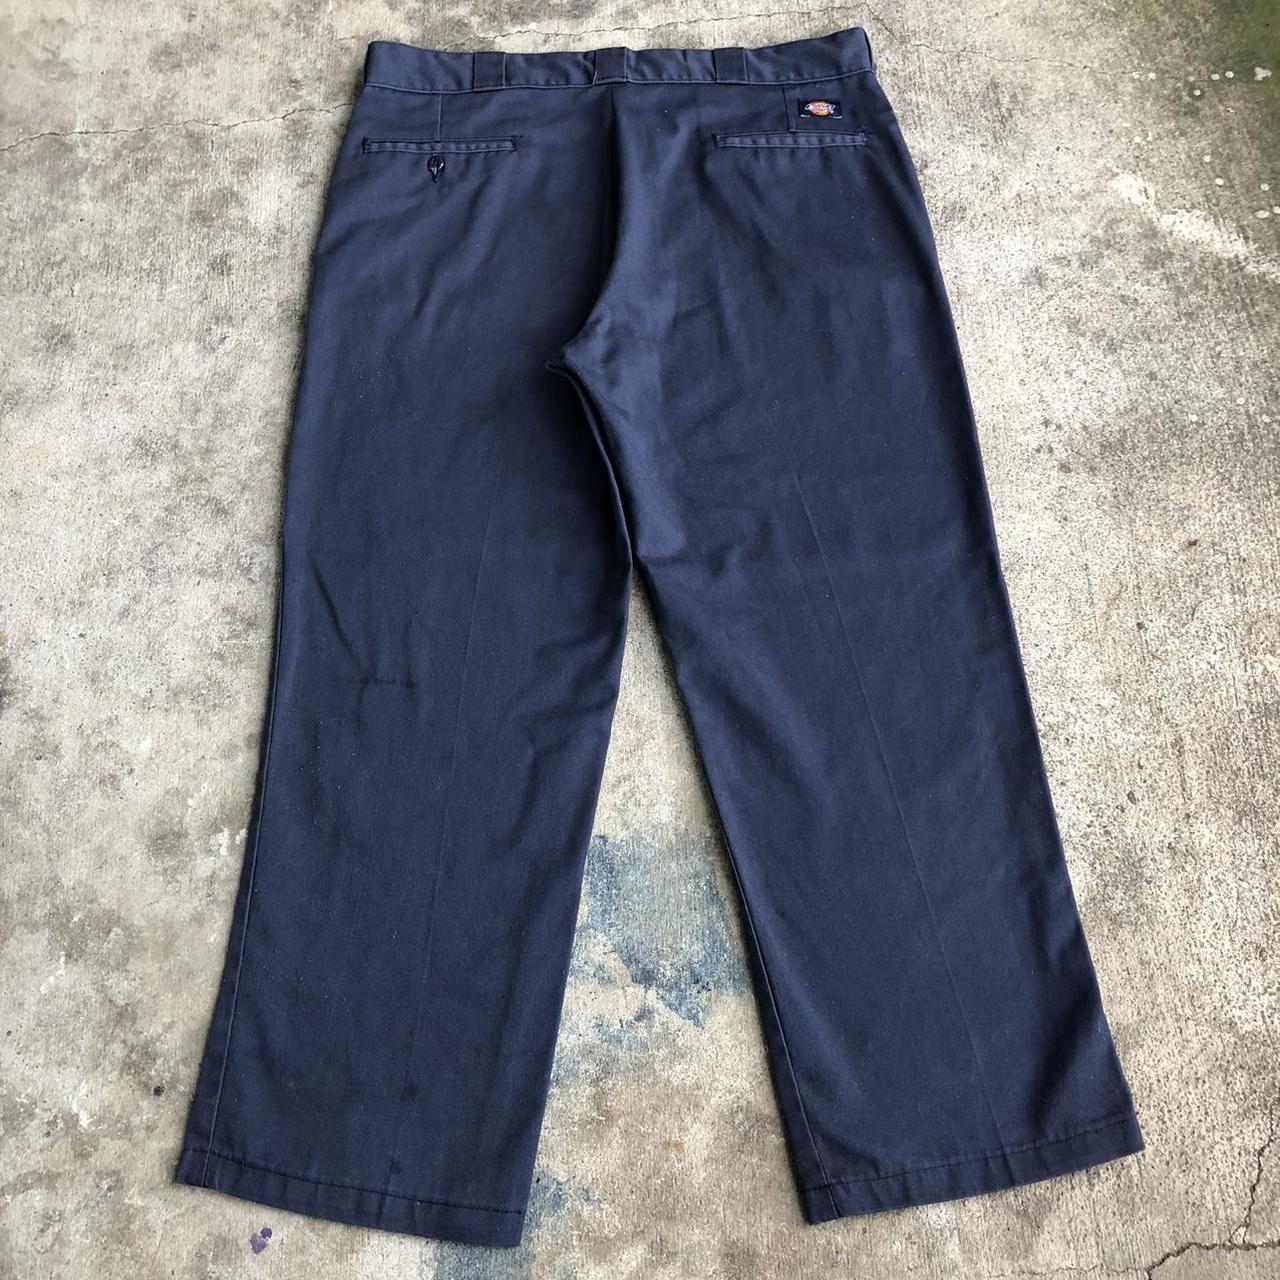 Vintage navy blue dickies pants size 36 X 28 🌀... - Depop